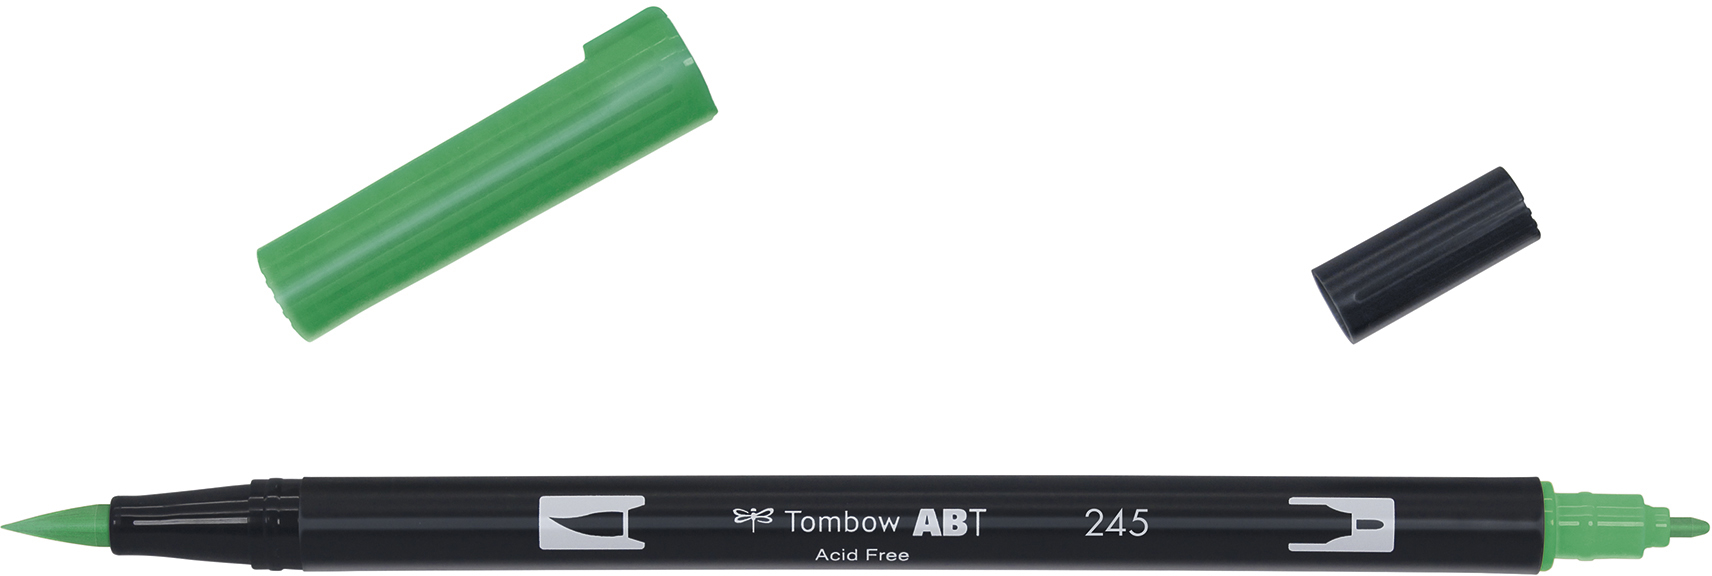 TOMBOW Dual Brush Pen ABT 245 sap green